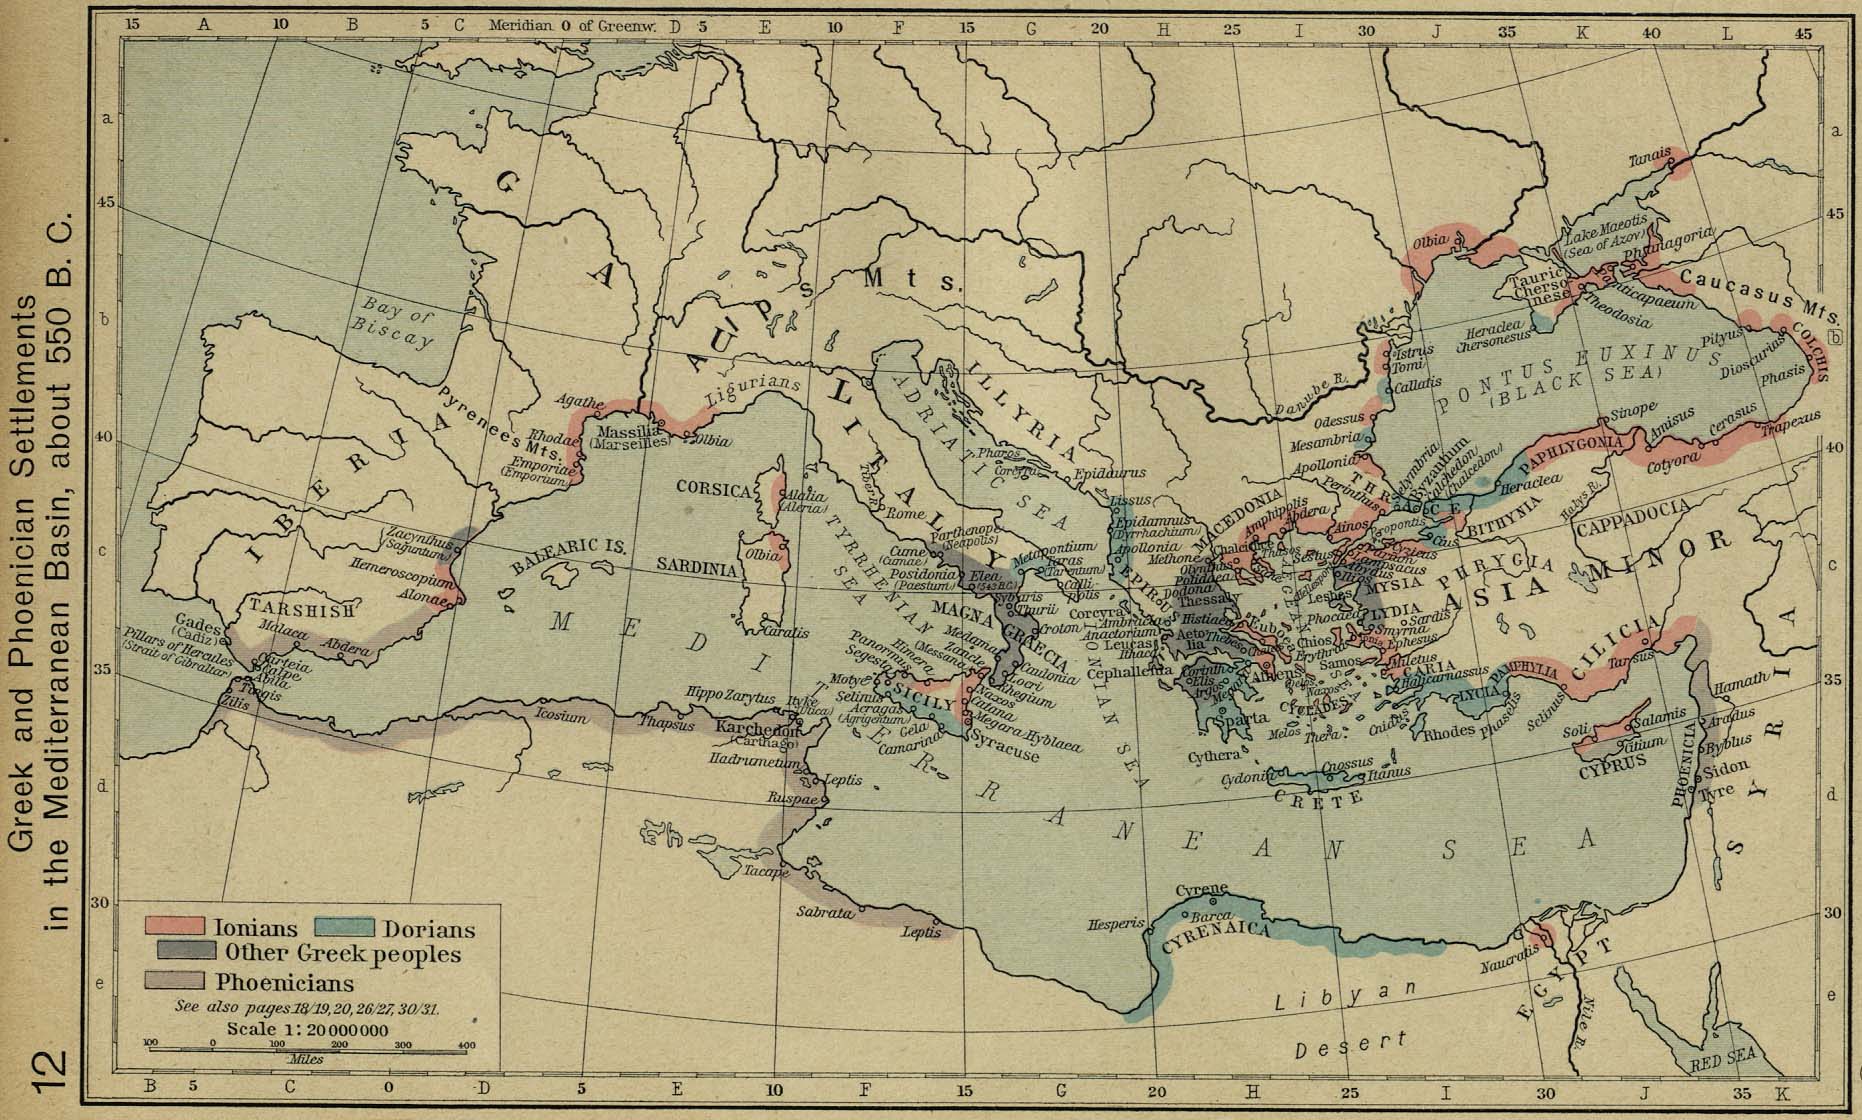 https://www.lib.utexas.edu/maps/historical/shepherd/greek_phoenician_550.jpg